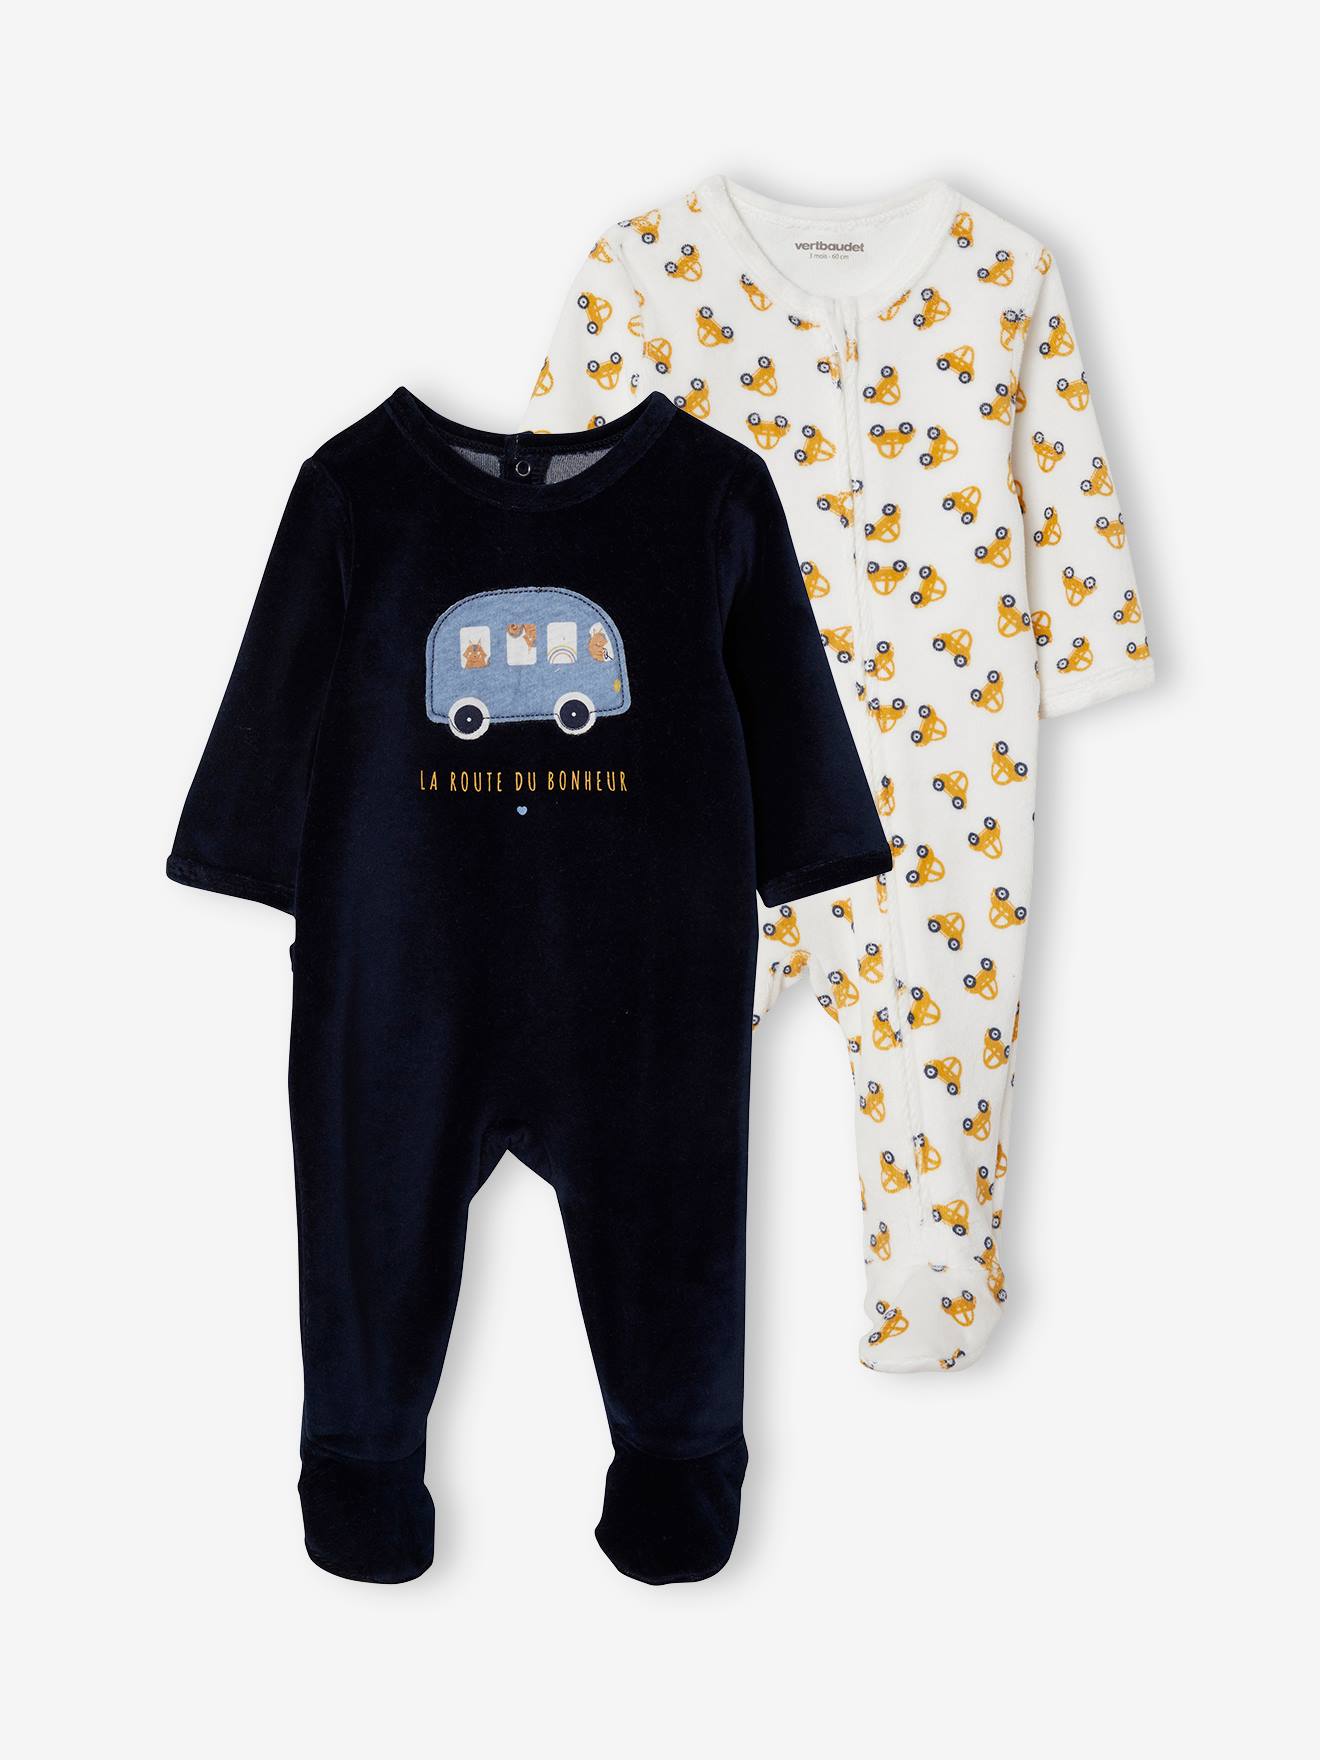 Pyjamas Fille ★ Bébé Naissance 0 à 1 Mois ★ Lot de 3 Pyjamas